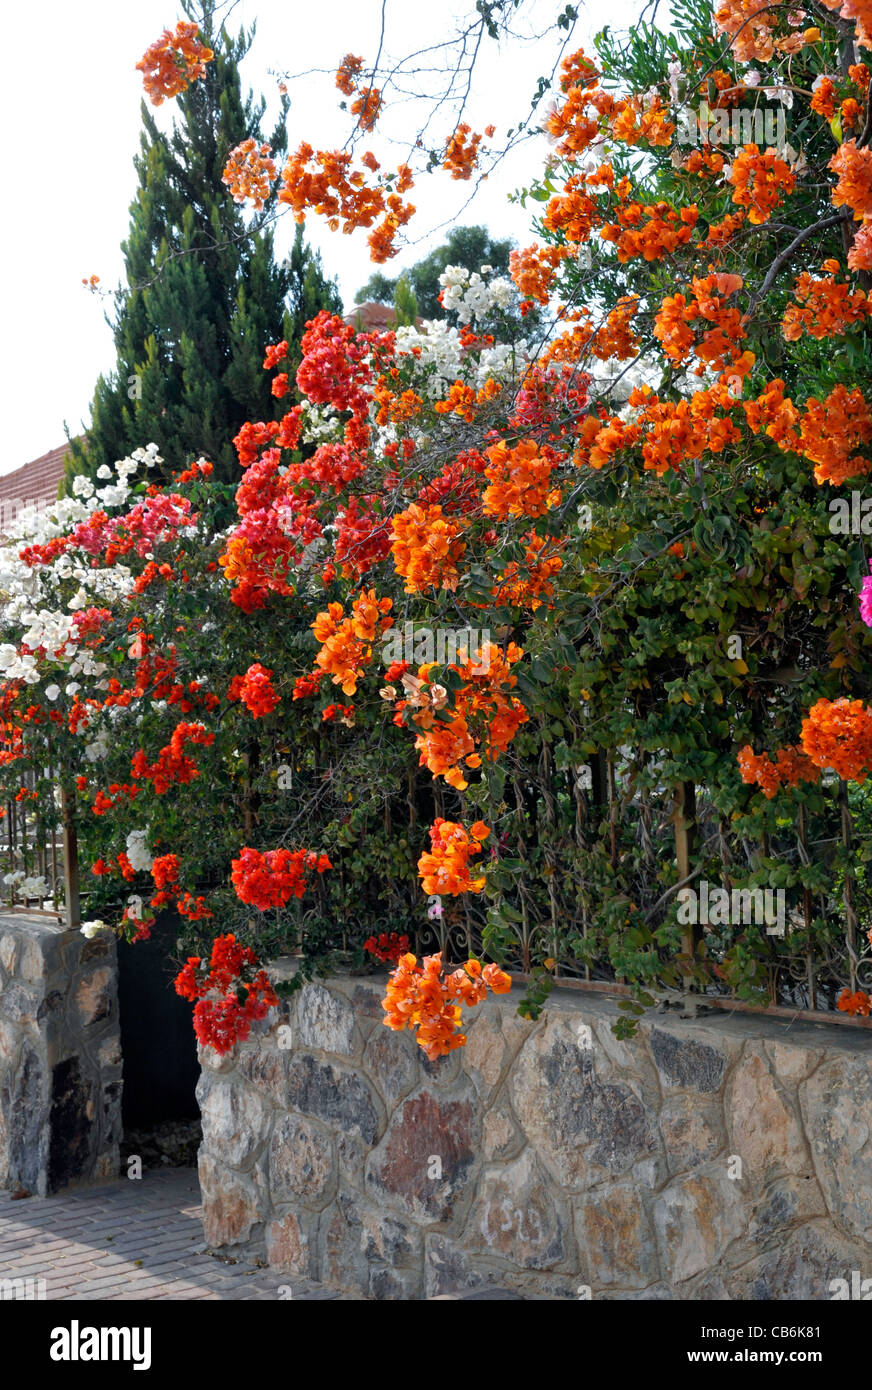 Des fleurs orange en vertu de l'arrière-cour en pierre barrière, Arad, Israël, Asie, Moyen Orient Banque D'Images